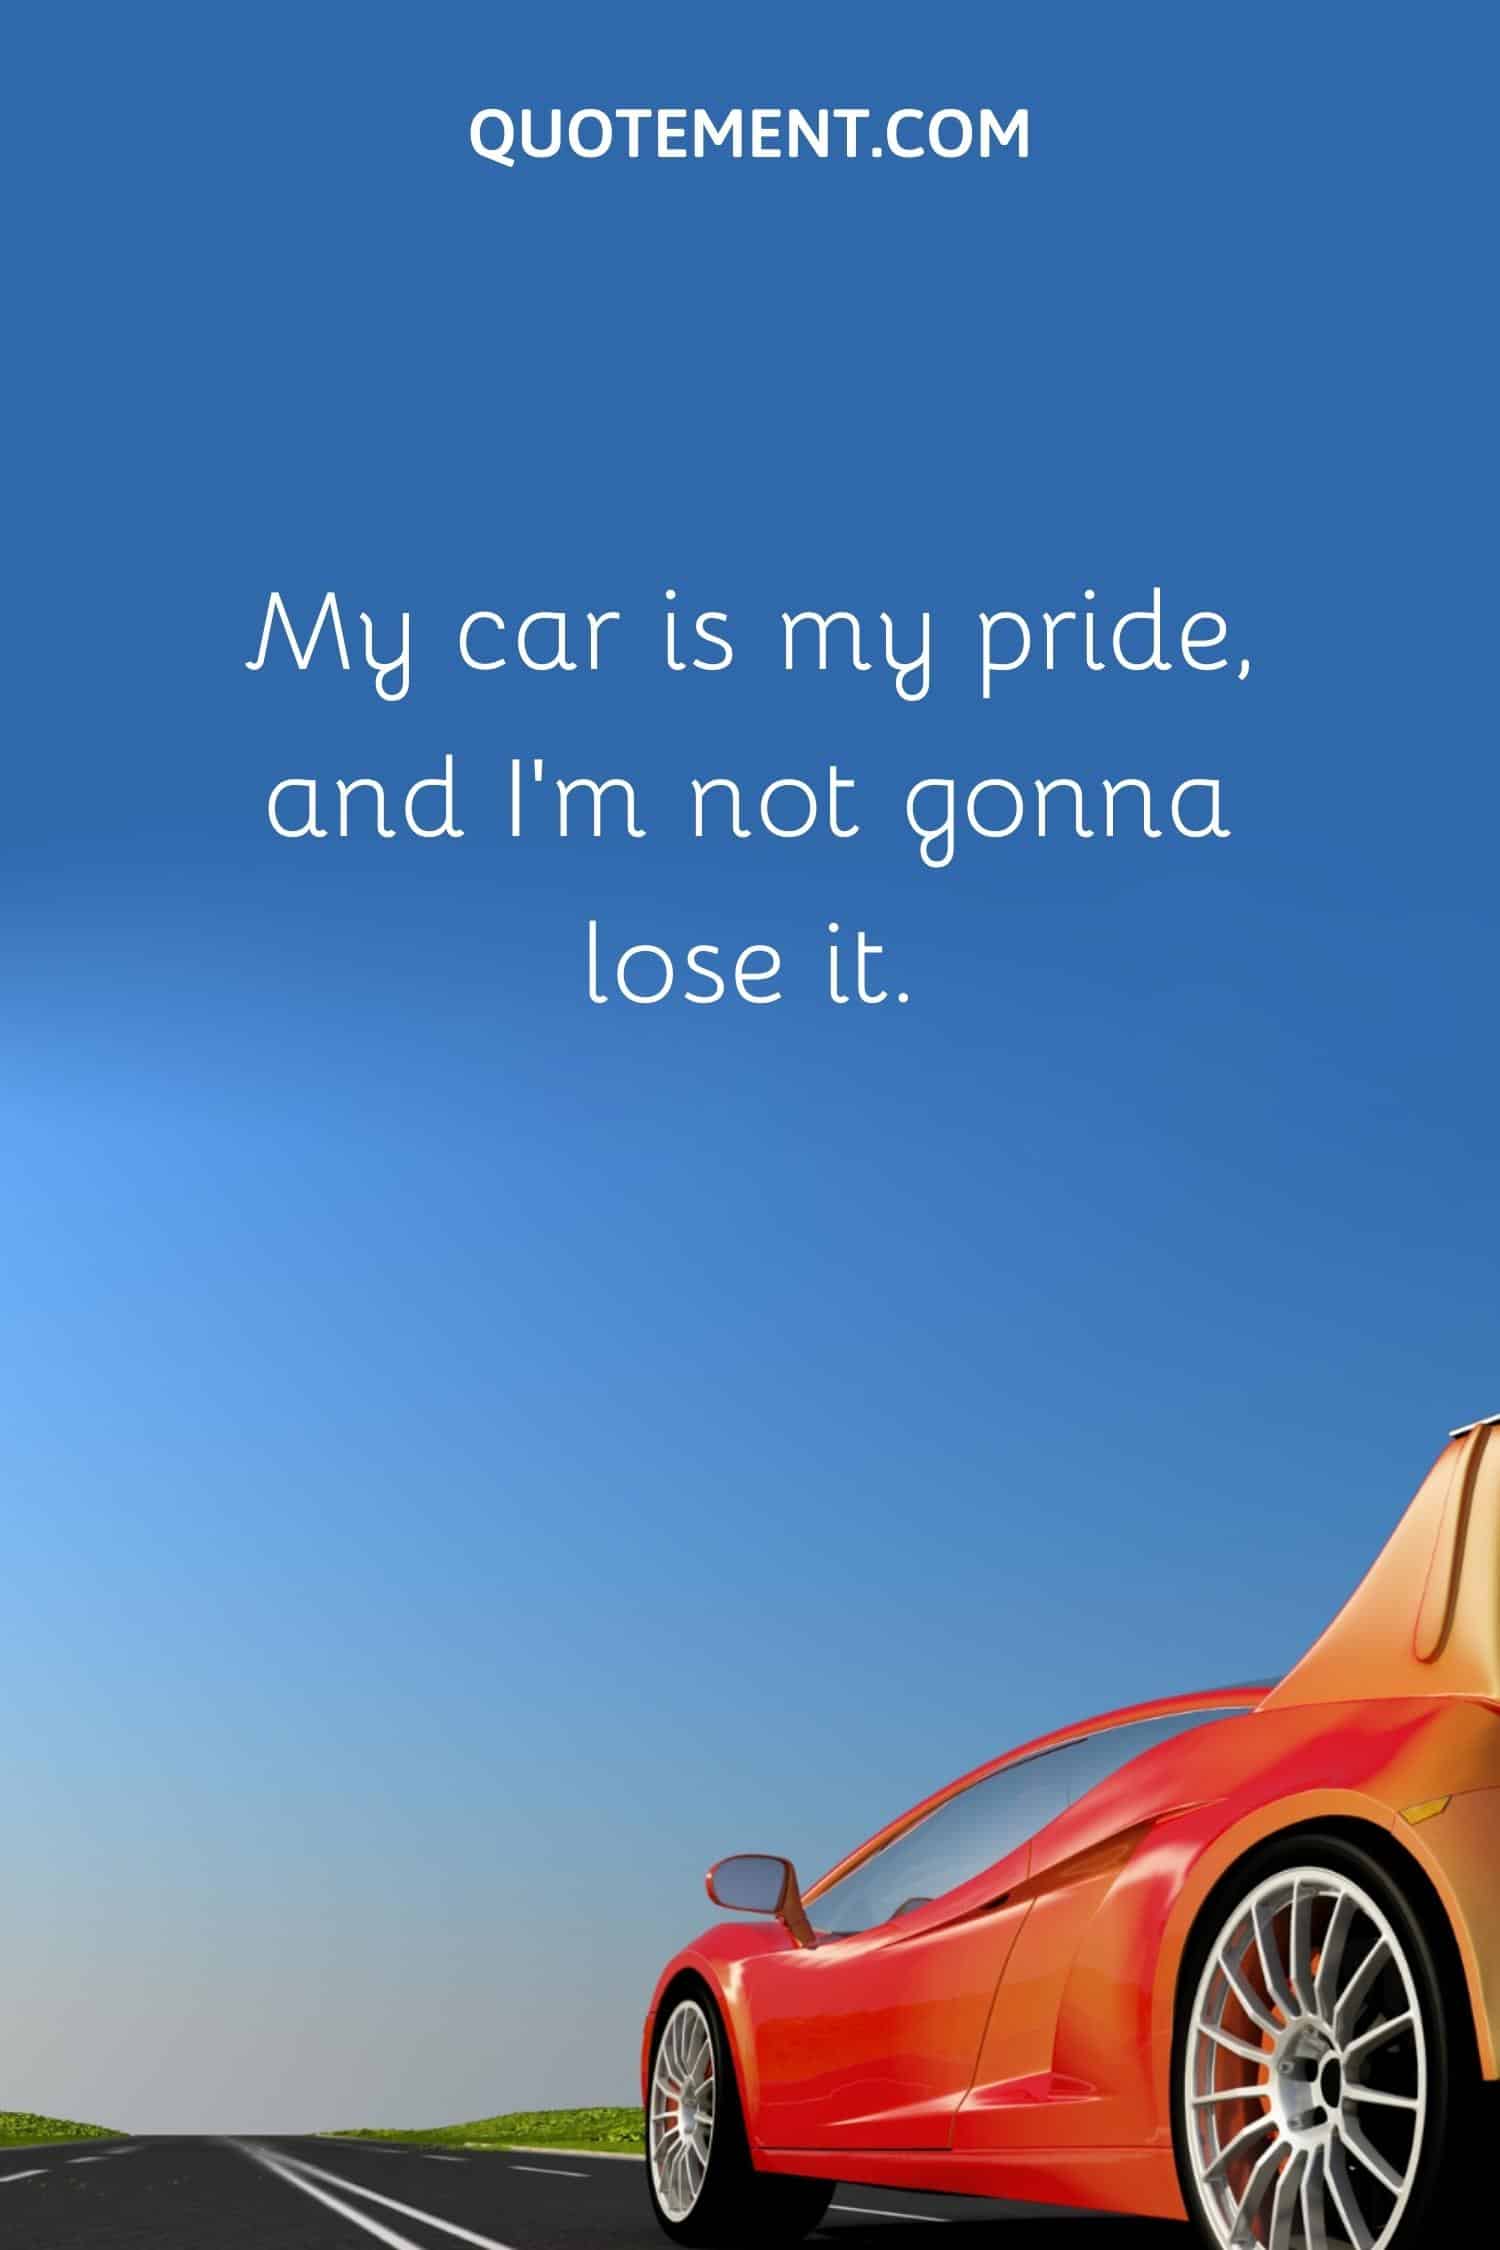 My car is my pride